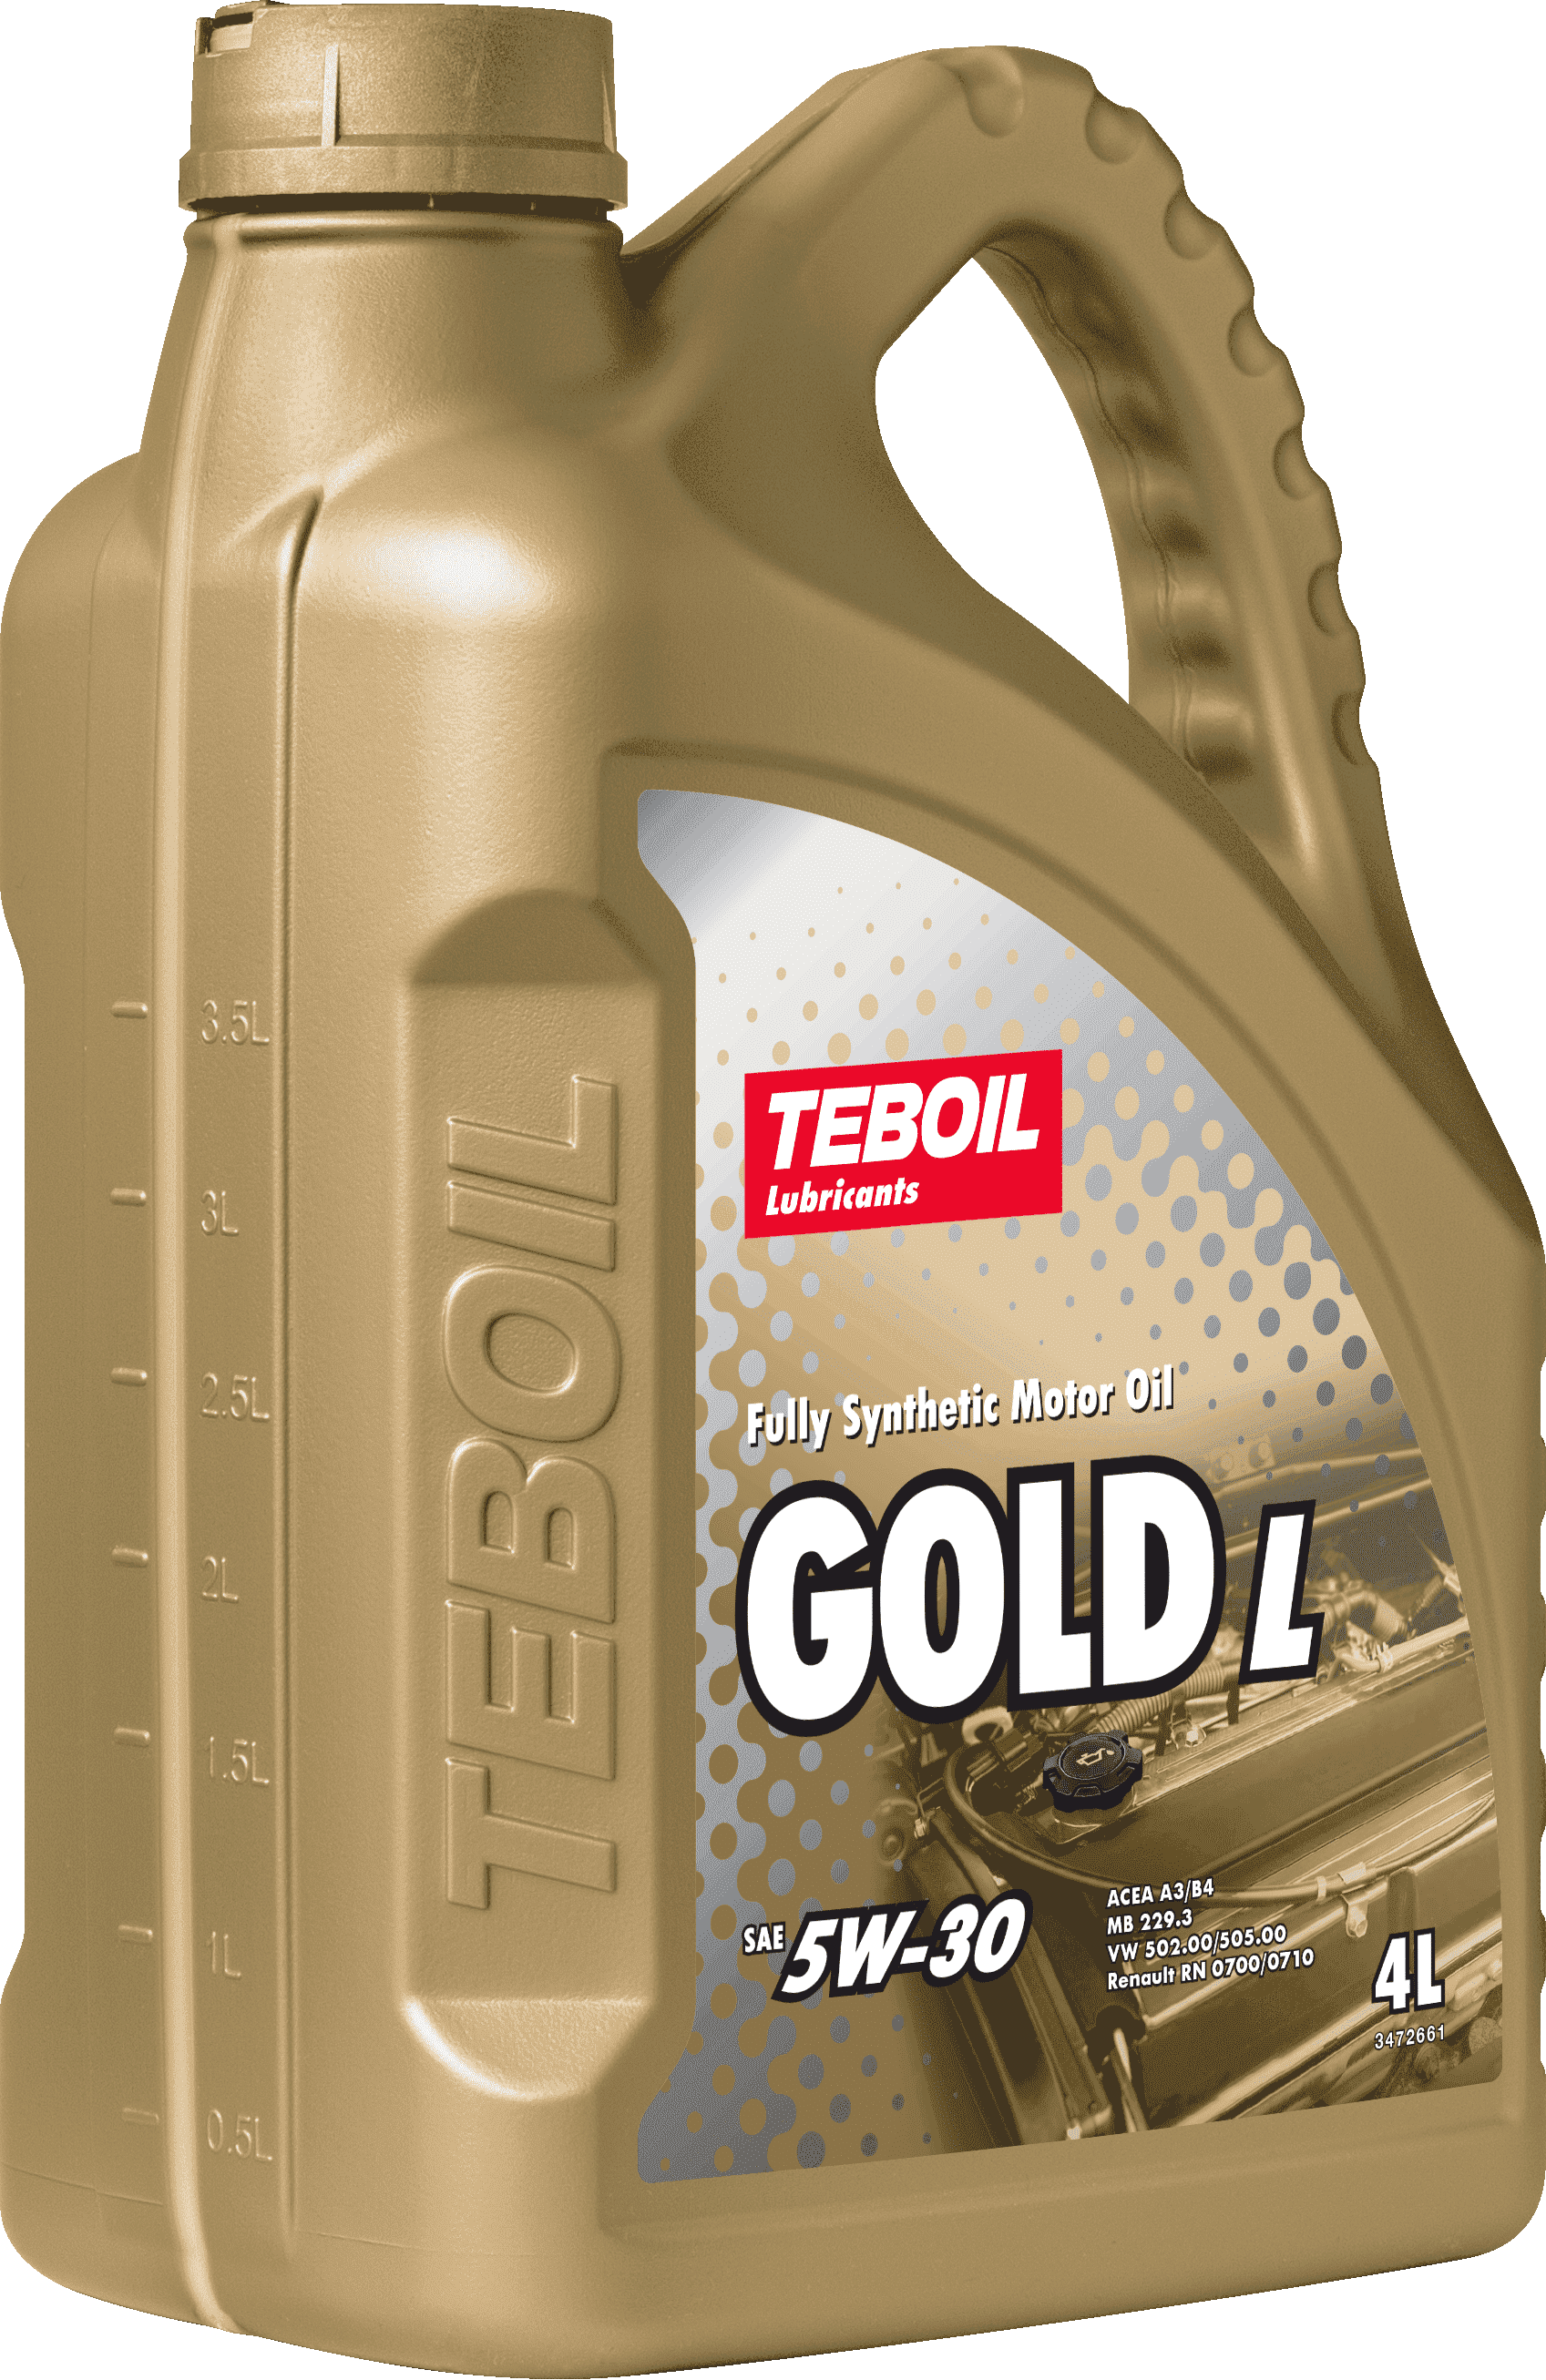 Синтетическое моторное масло TEBOIL GOLD L 5W-30